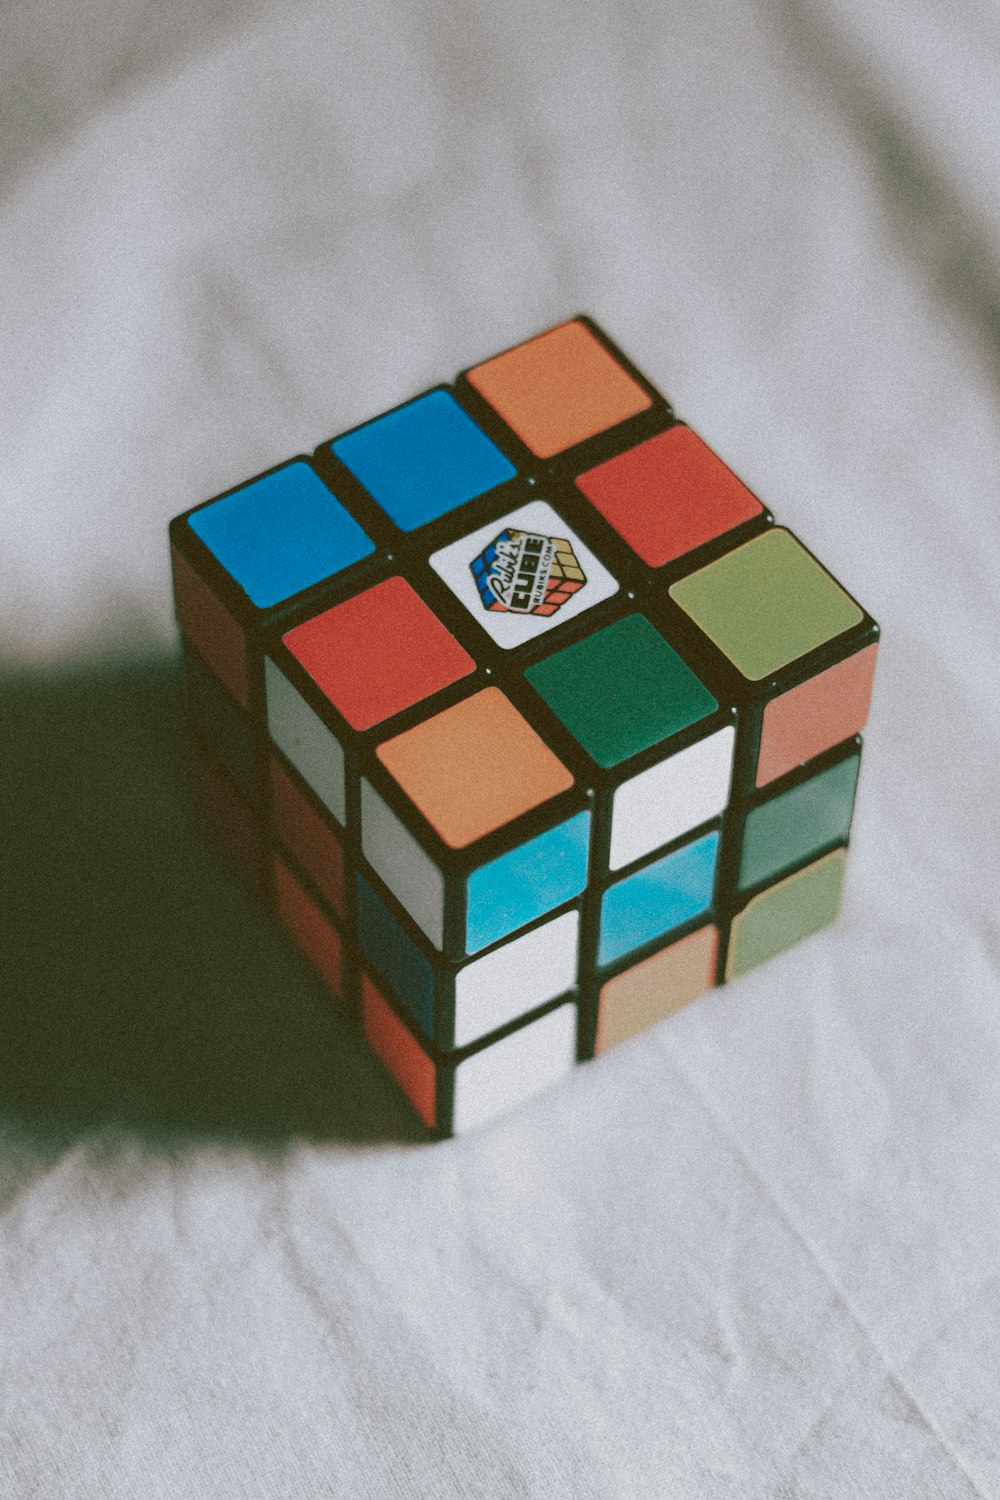 3 X 3 Rubiks Cube Photo Free Rubix Cube Image On Unsplash